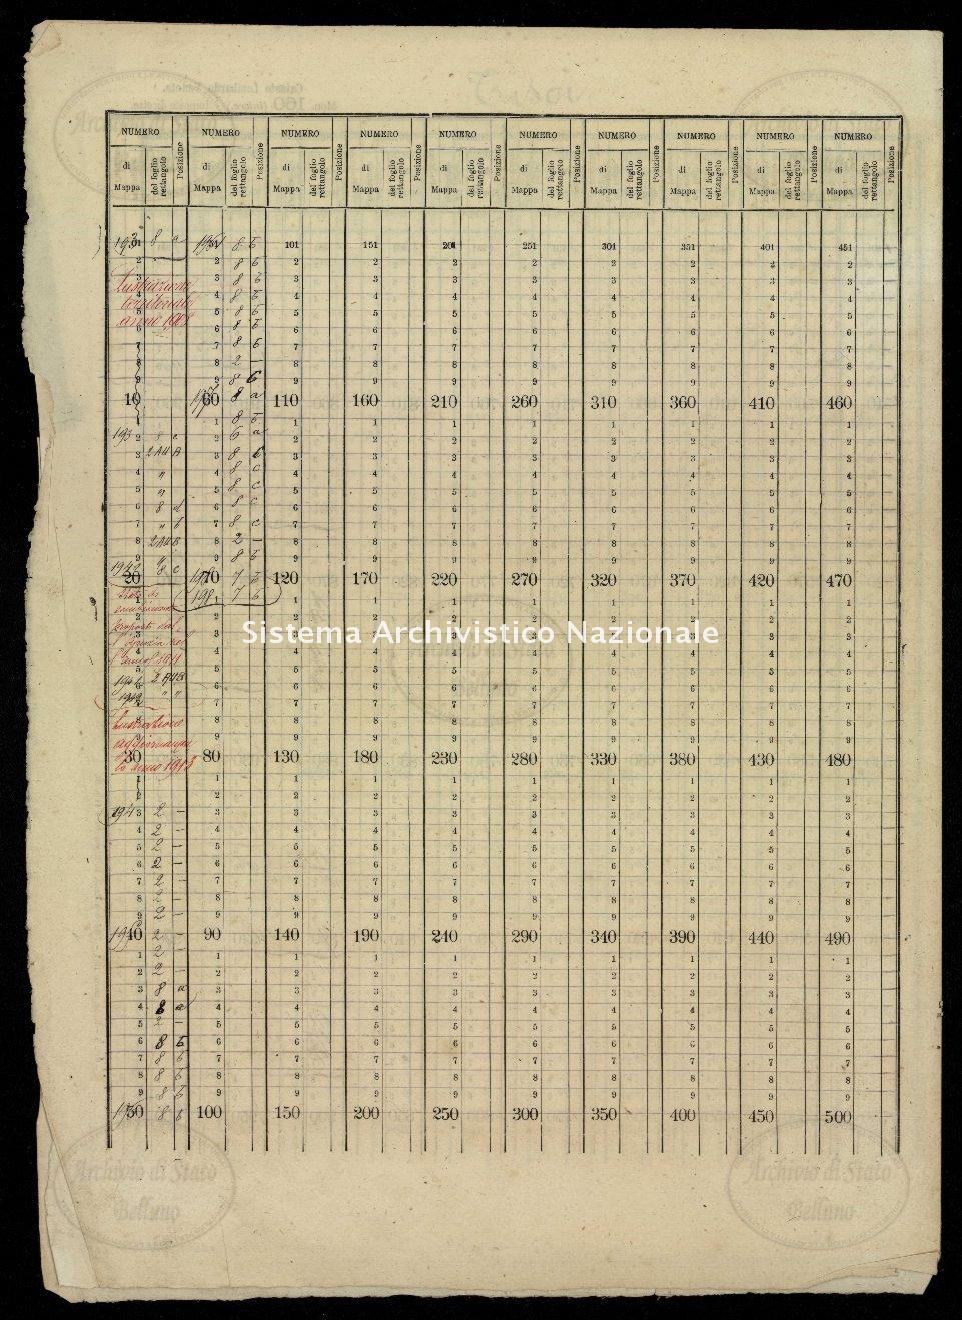 Archivio di Stato di Belluno, Censo stabile attivato, Mappe, Mappe I conservazione, Comune censuario 019 Tisoi